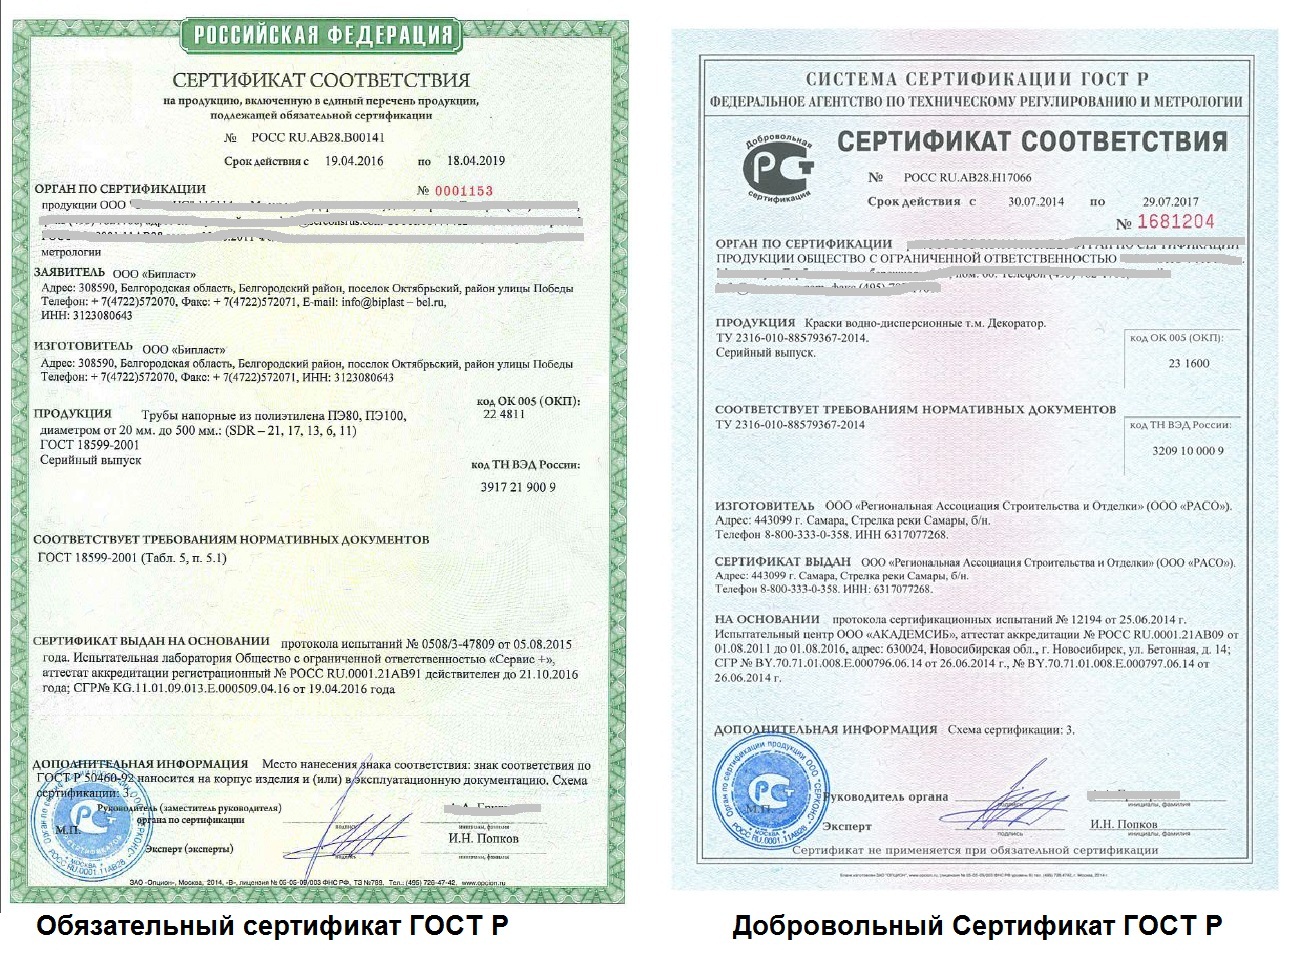 В чем различие между сертификатами?